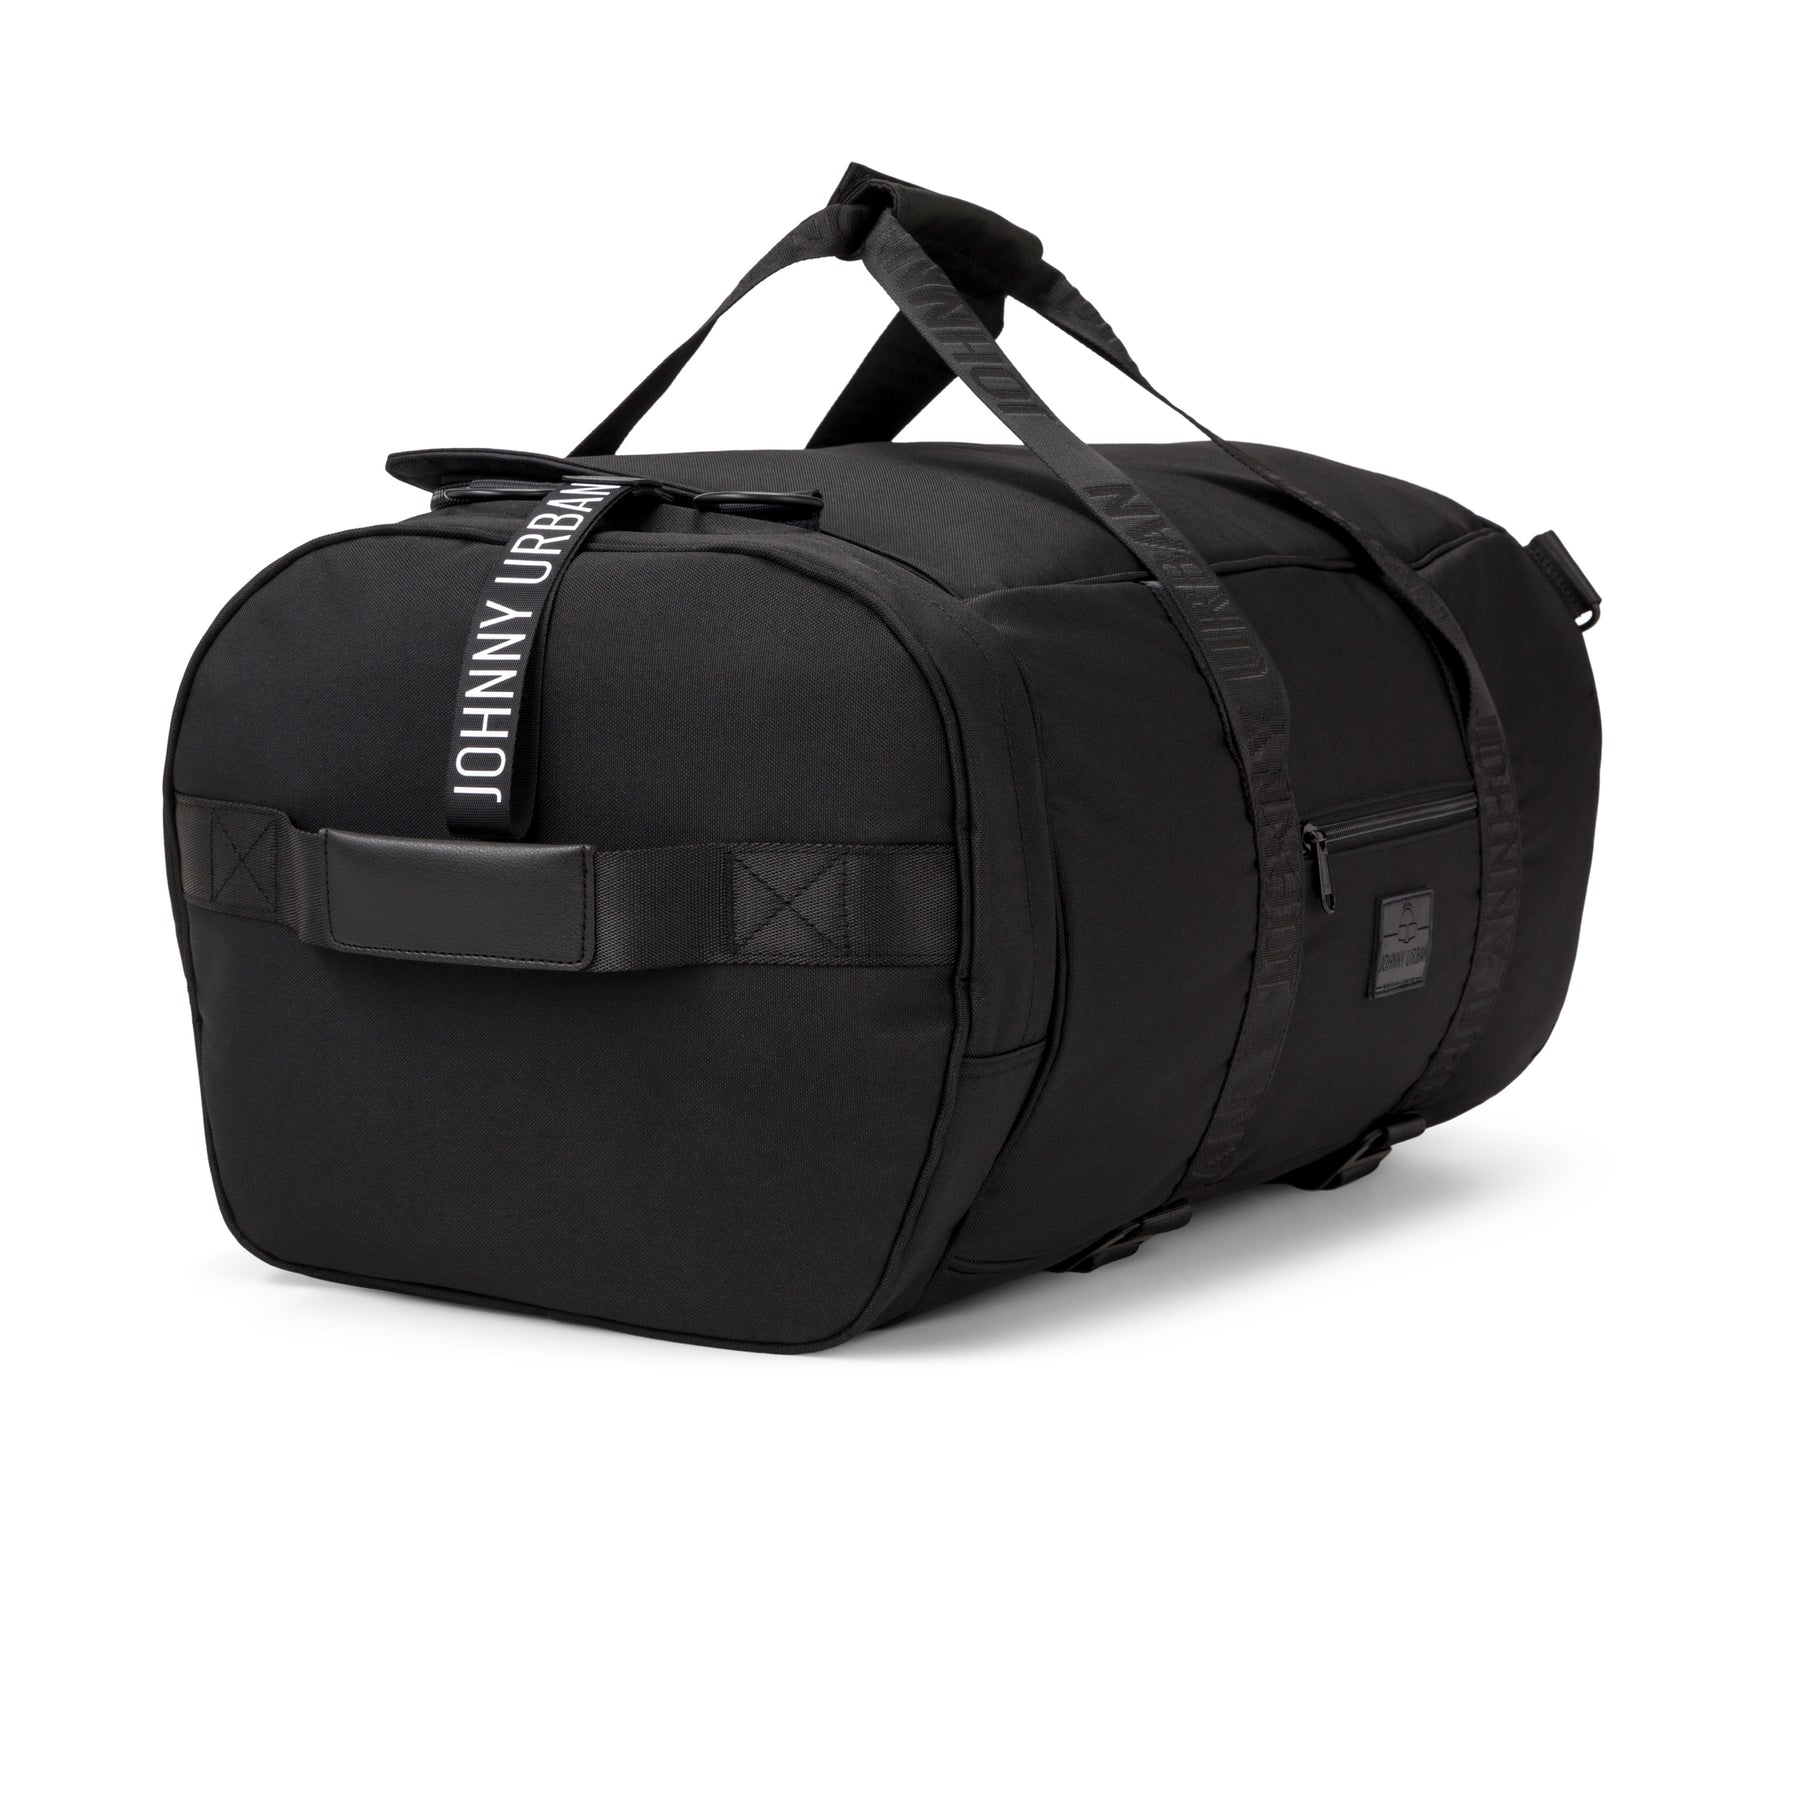 Funktionale Duffle Bag für Reisen